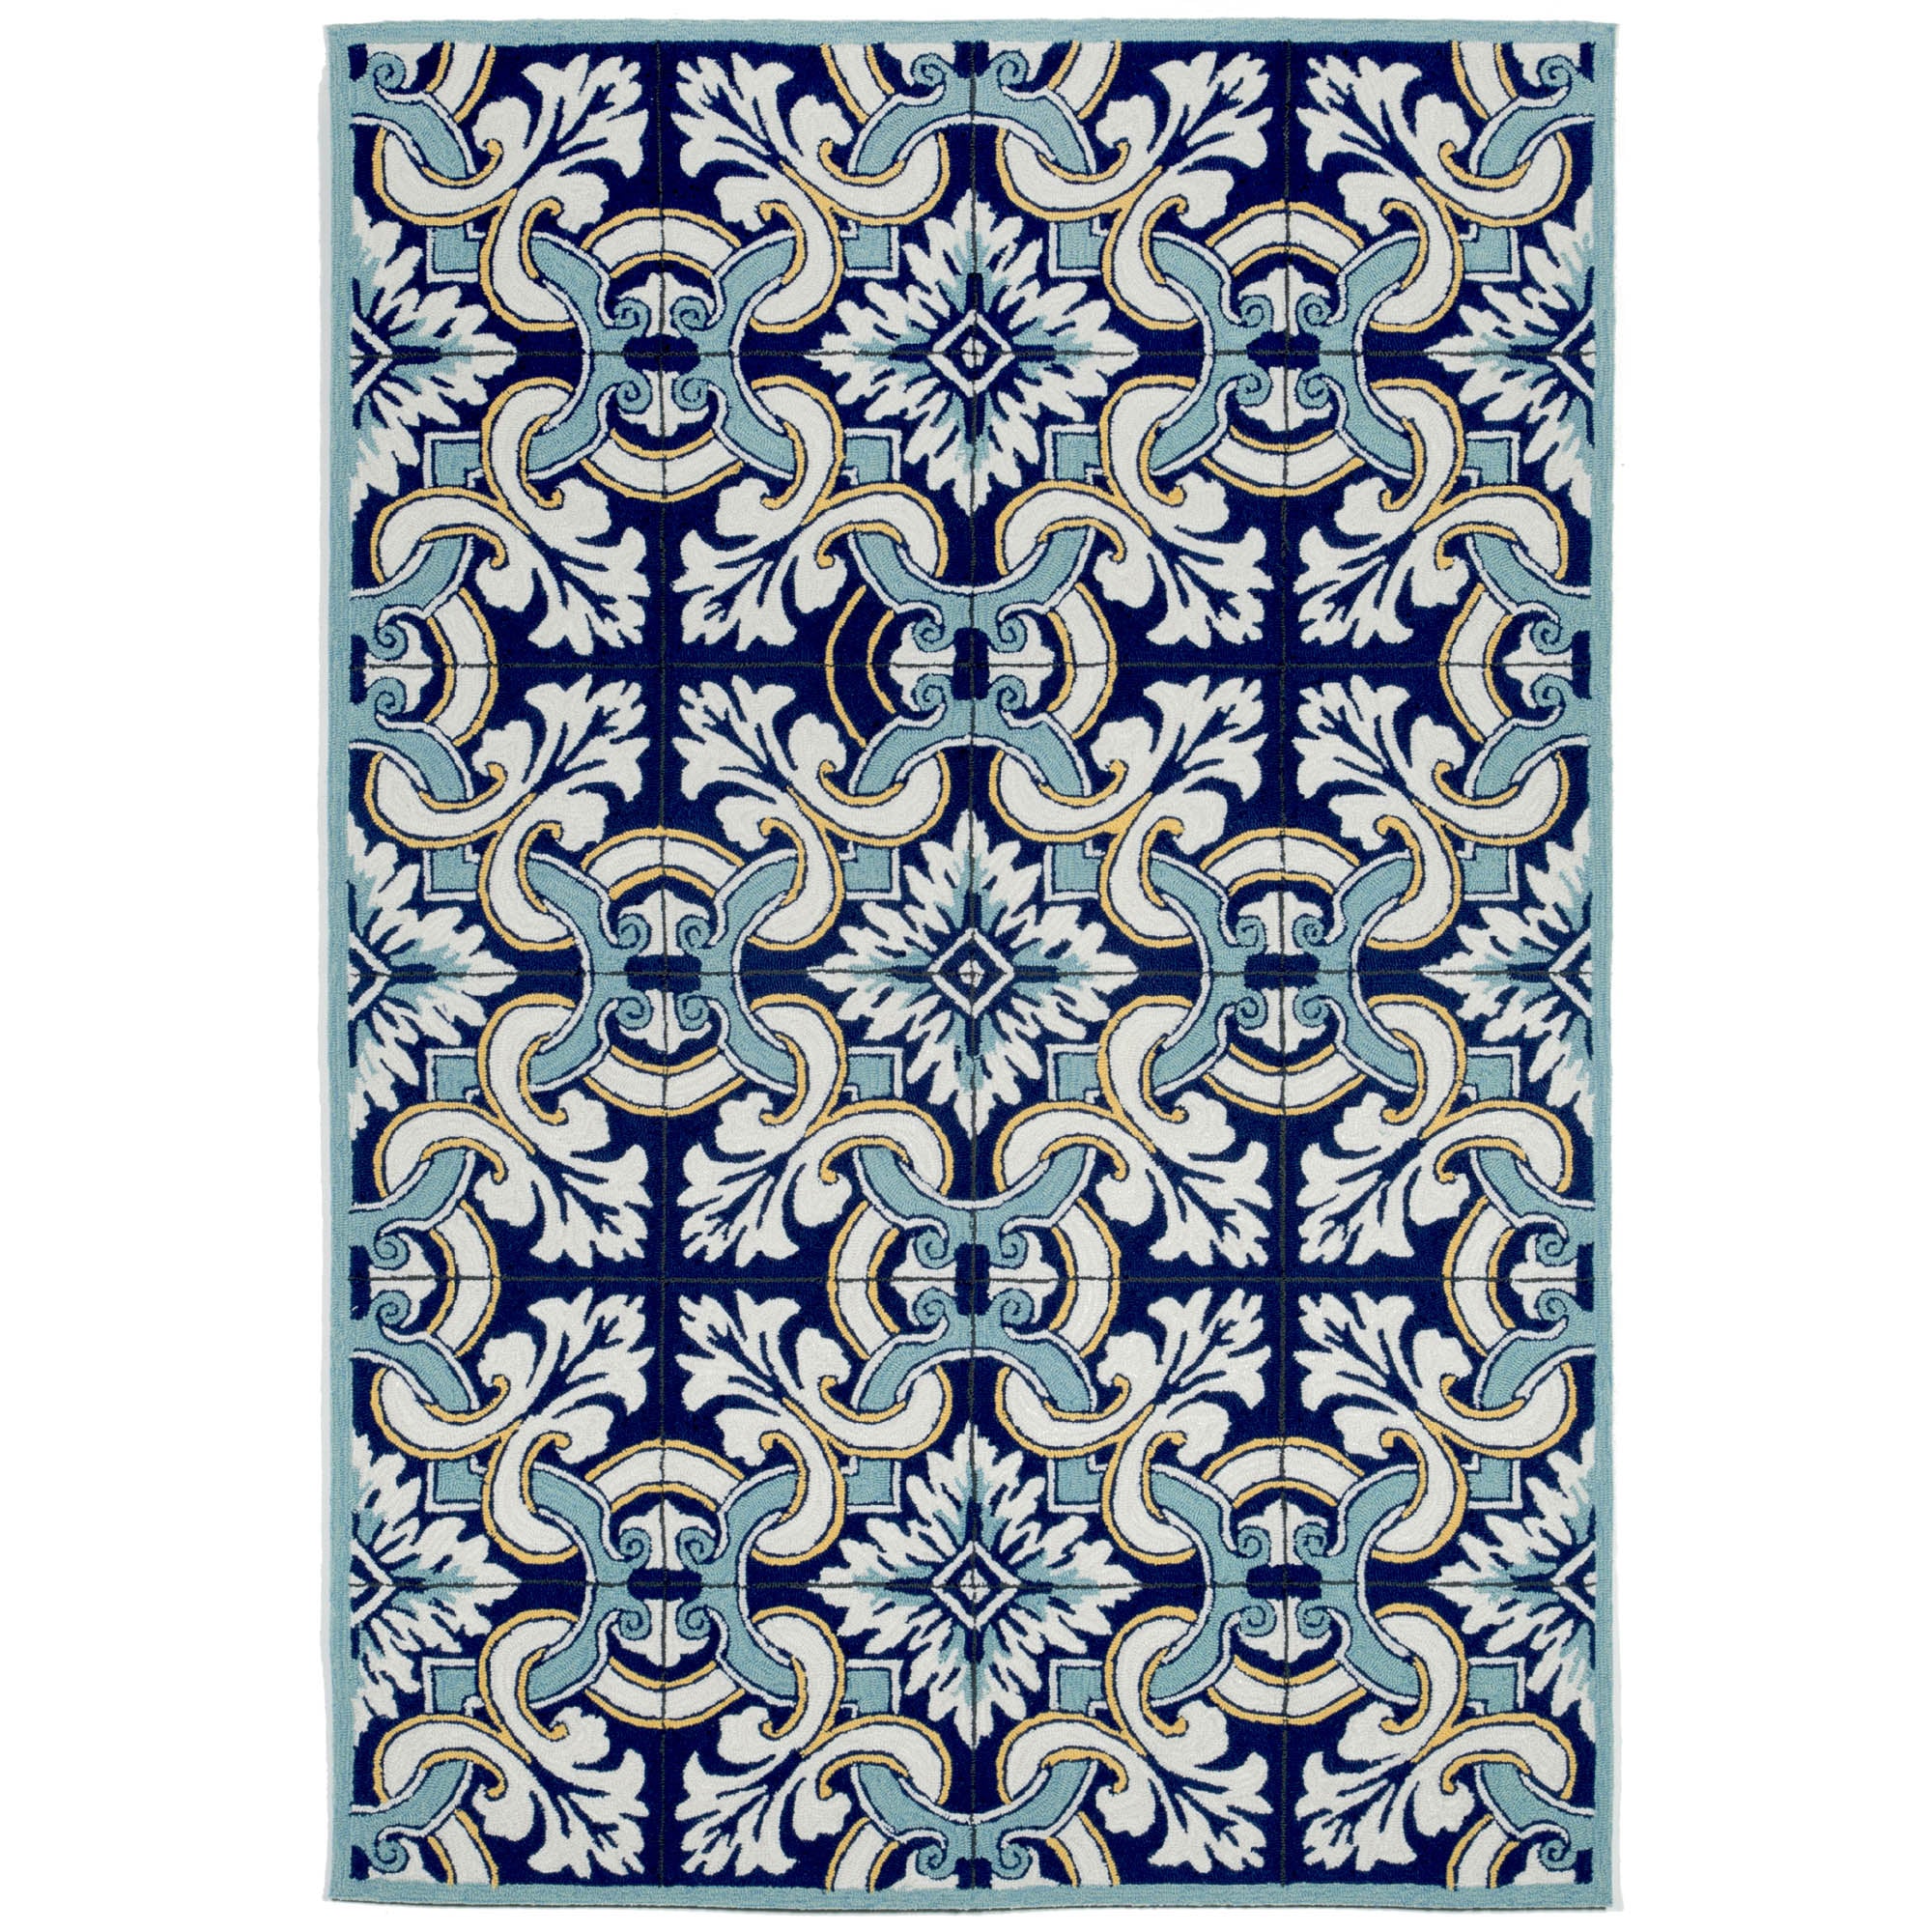 RAVELLA Floral Tile Blue